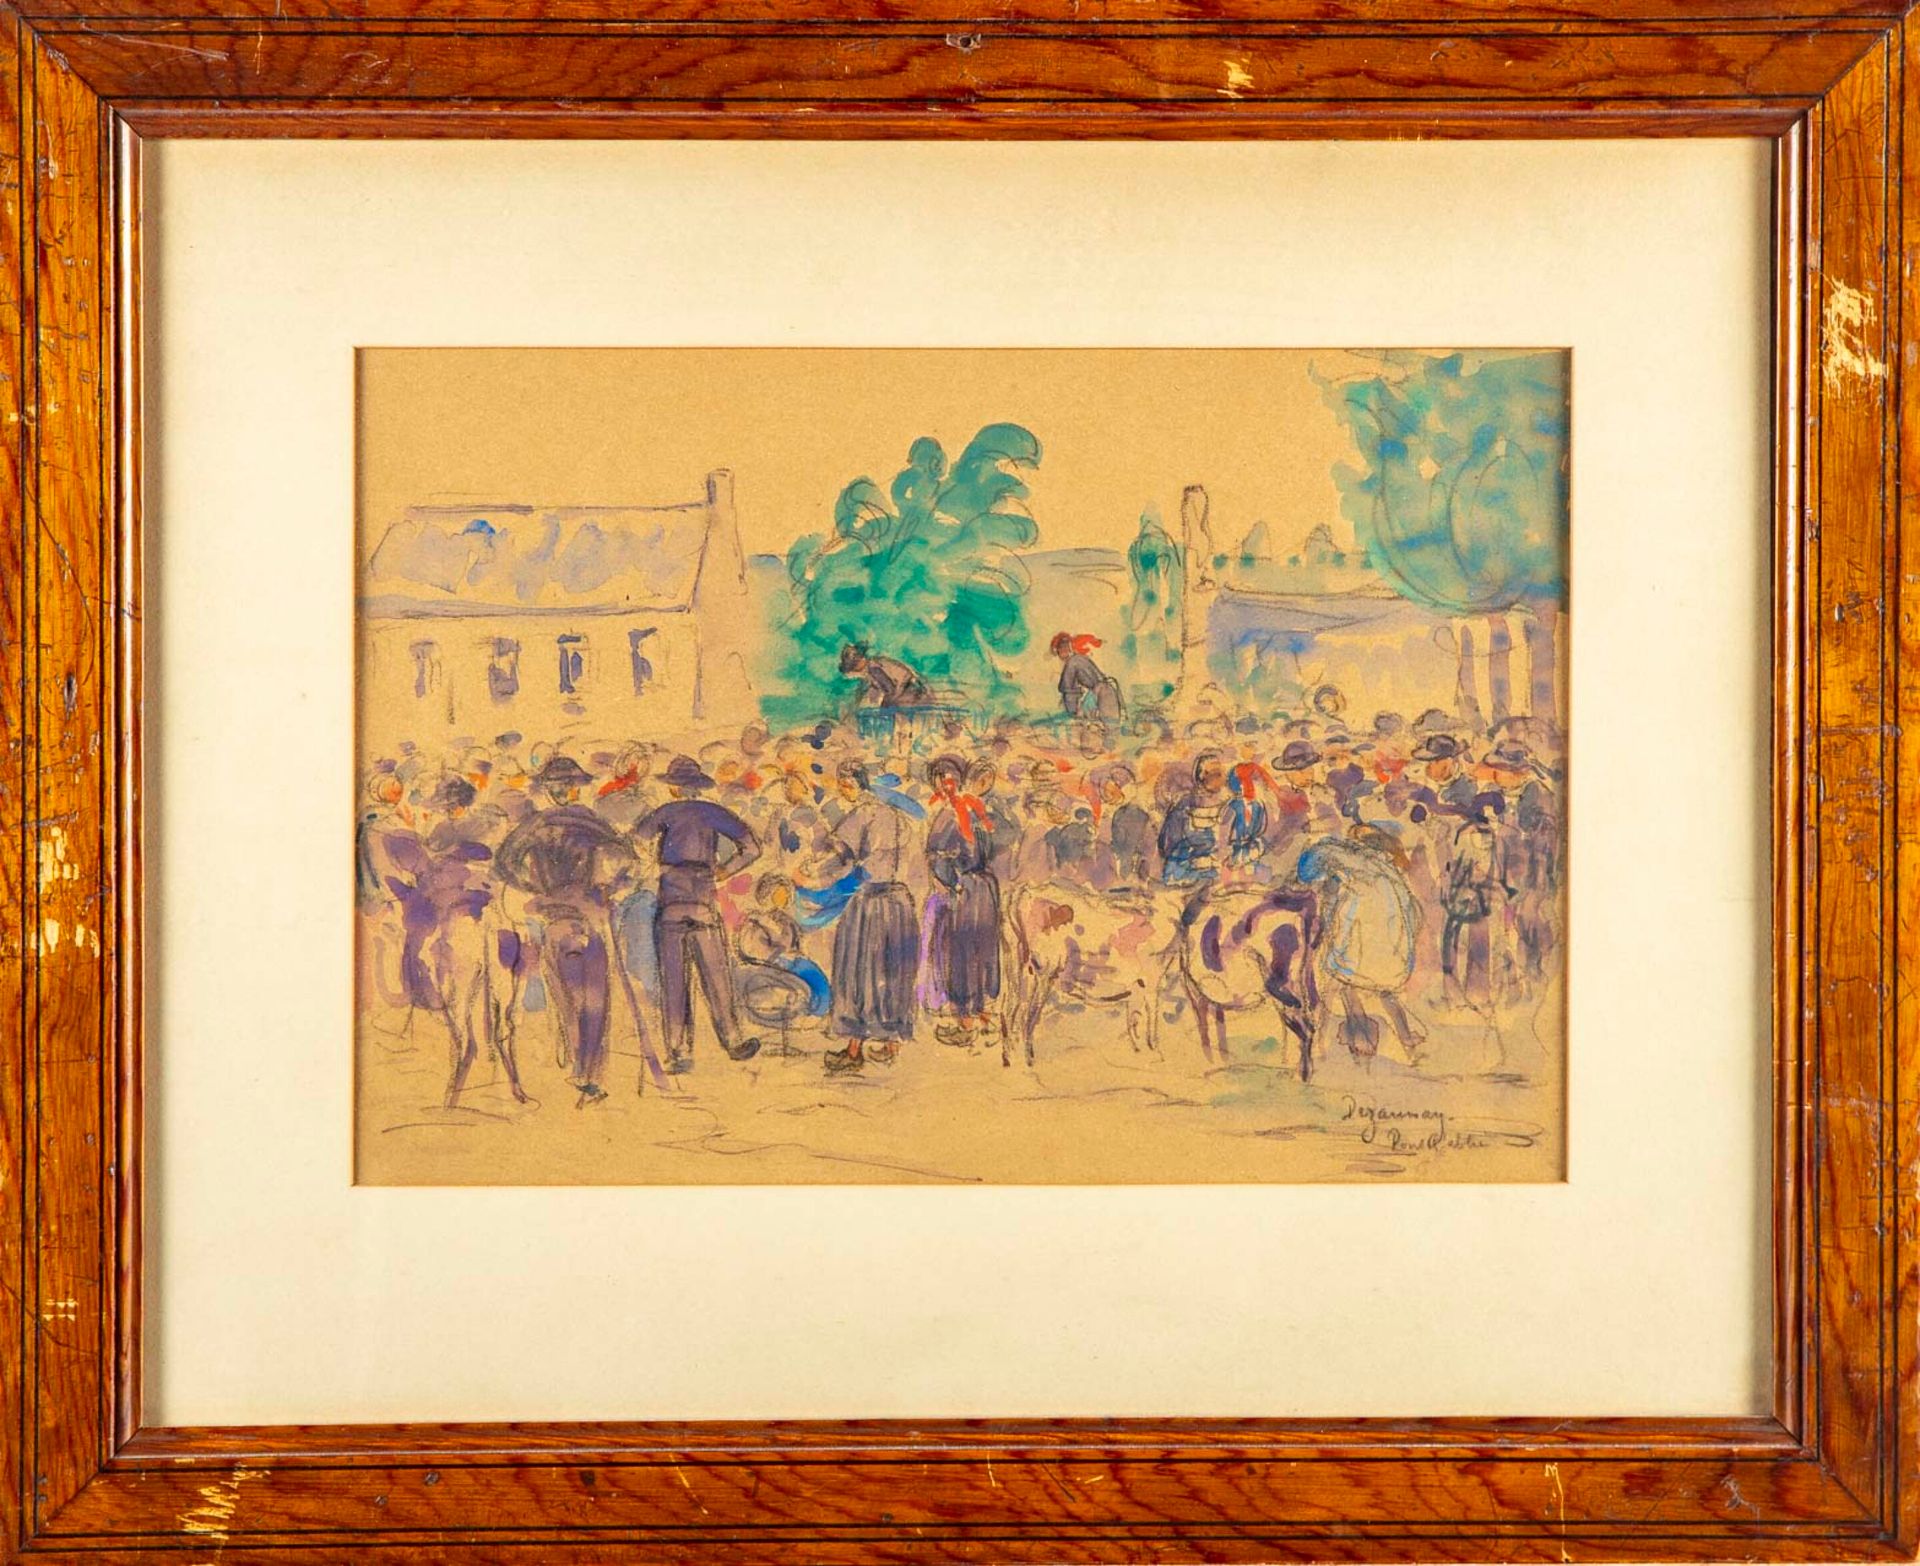 DEZAUNAY 埃米尔-德佐奈 (1854-1938)

阿贝桥的市场场景

纸上铅笔和水彩高光，已签名并位于右下方

22 x 31,5 cm

出处：An&hellip;